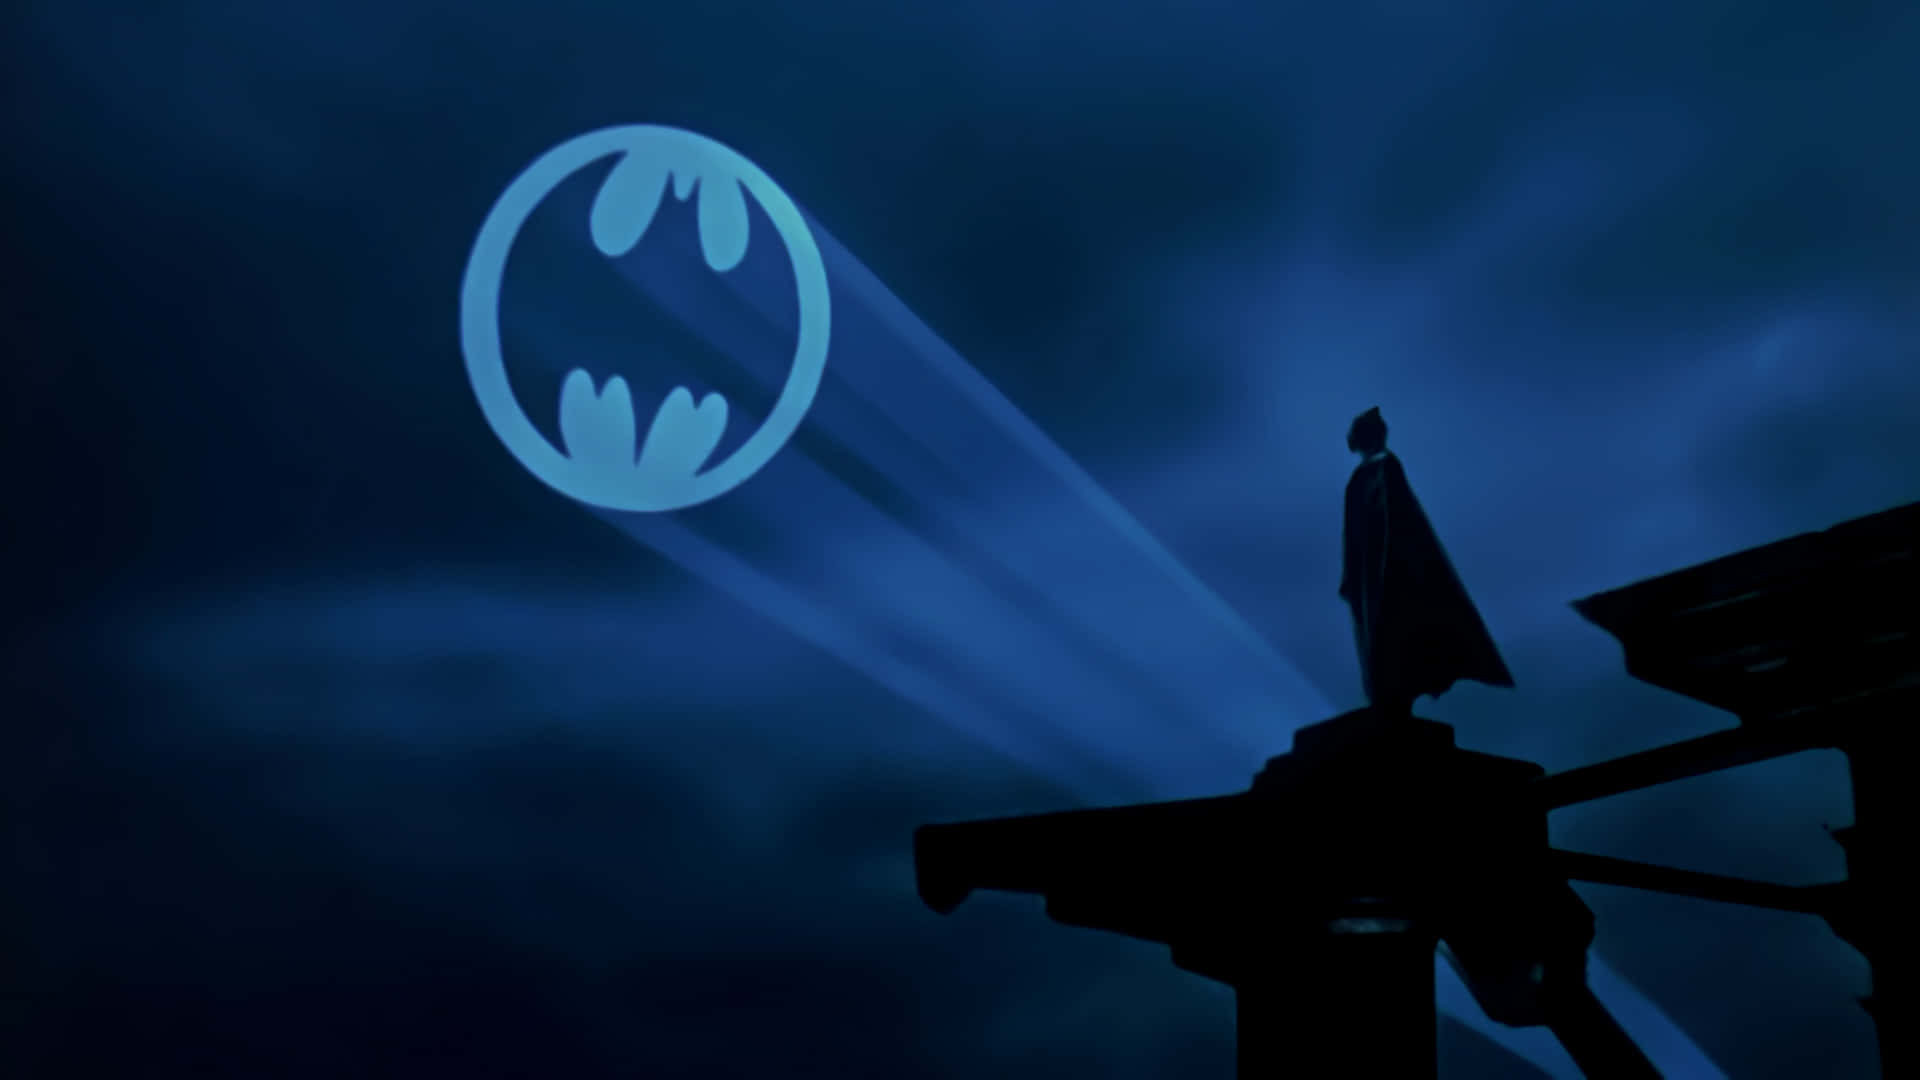 Bat Signal Shining In The Night Sky